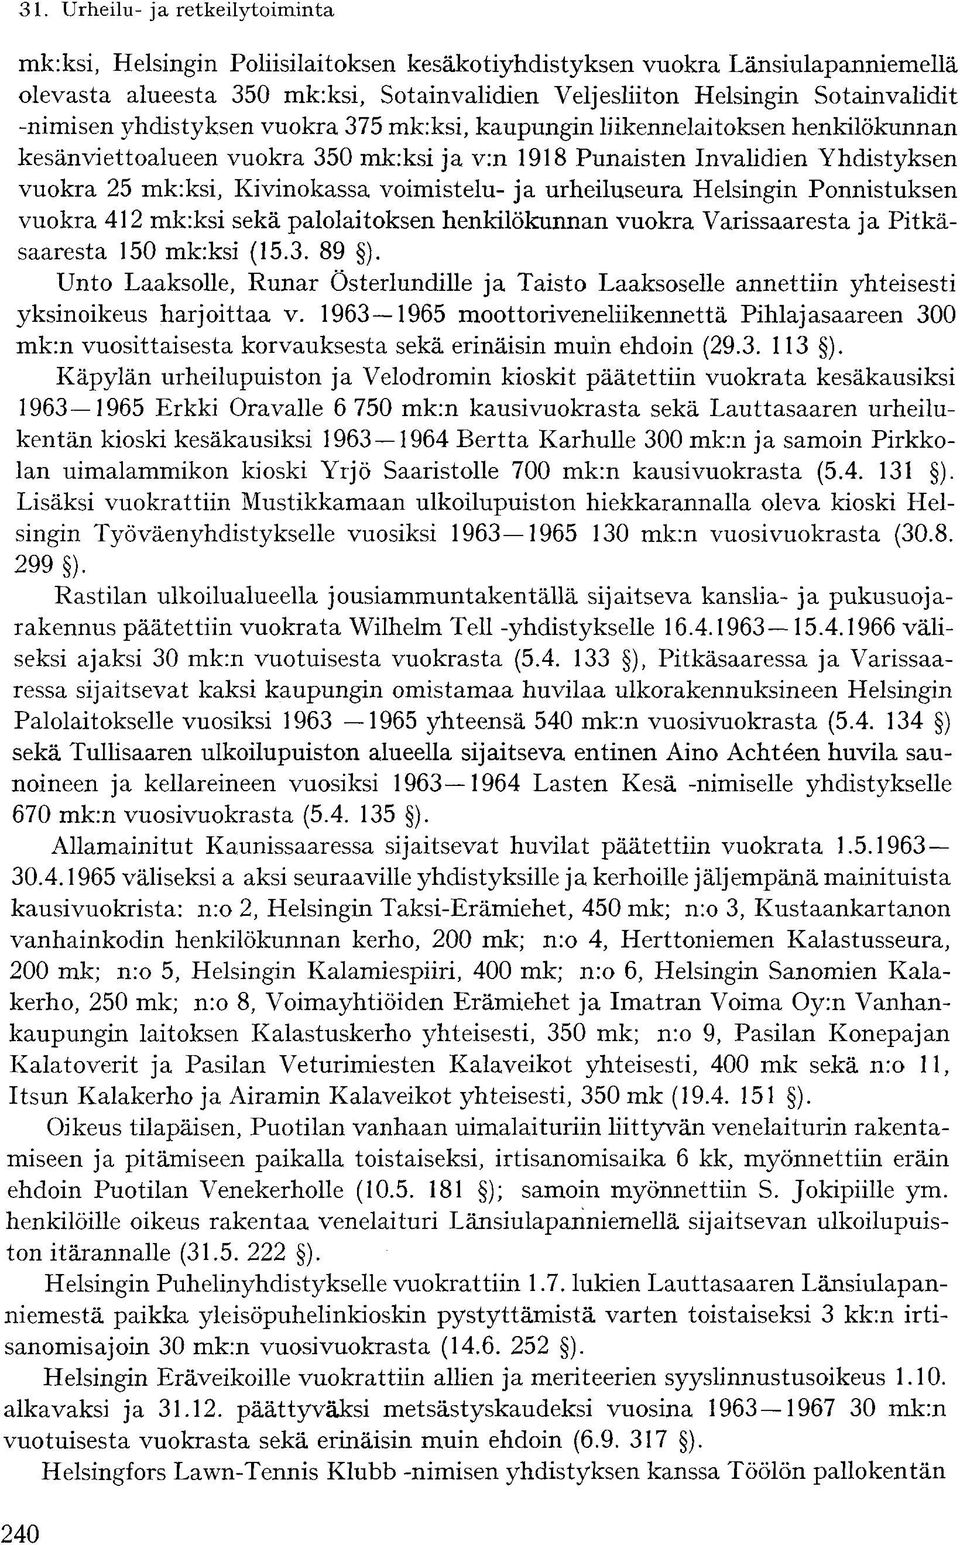 Ponnistuksen vuokra 412 mk:ksi sekä palolaitoksen henkilökunnan vuokra Varissaaresta ja Pitkäsäärestä 150 mk:ksi (15.3. 89 ).